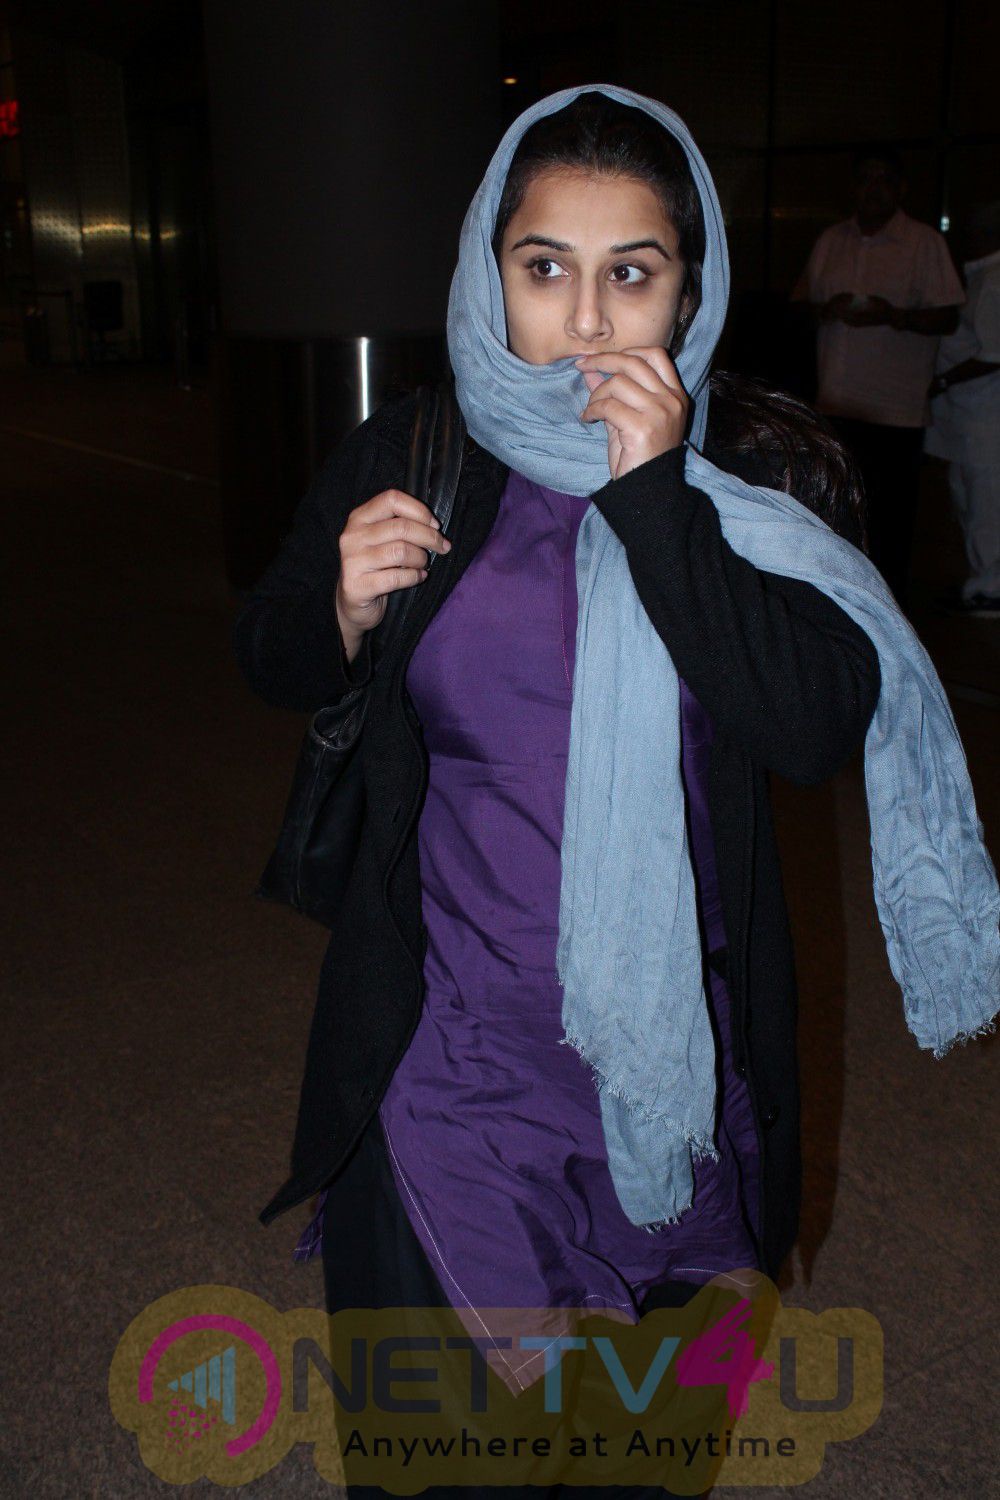 Actress Vidya Balan Spotted At Airport Good Looking Pics Hindi Gallery